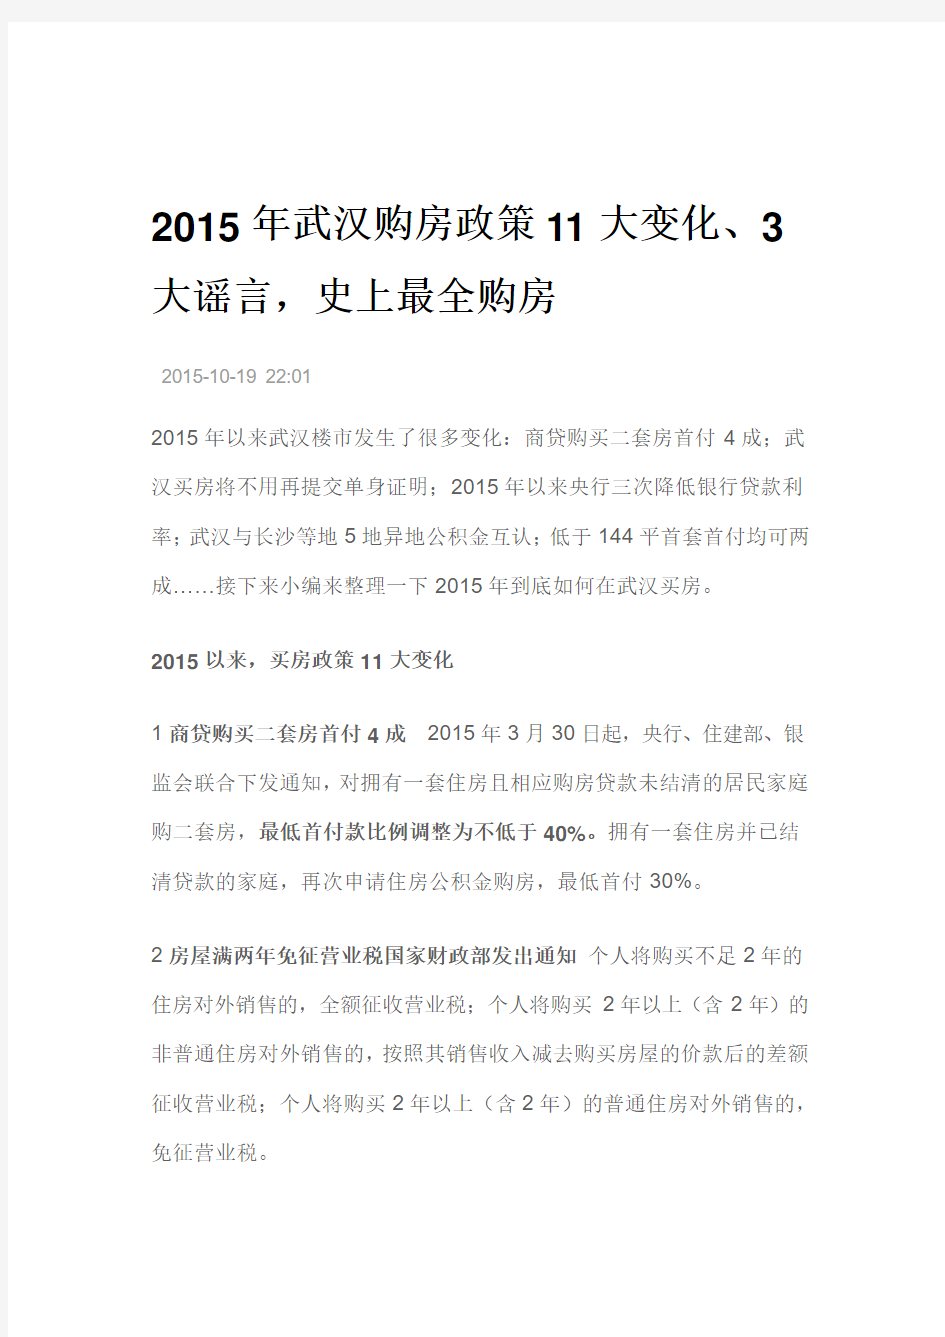 2015年武汉购房政策11大变化